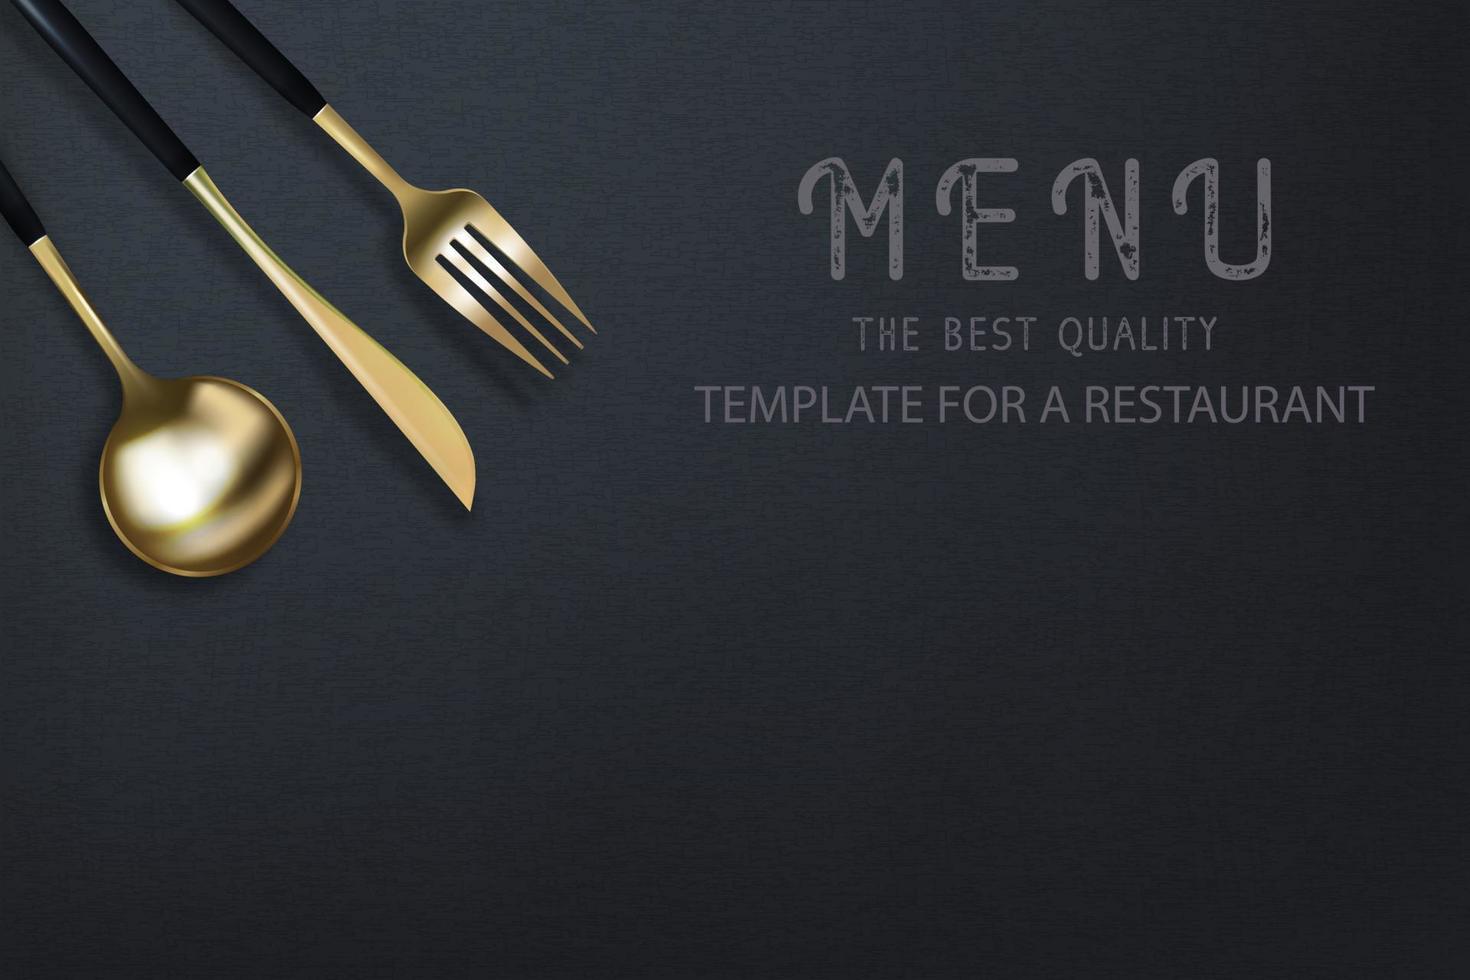 garfo, faca e colher dourados 3d realistas em um fundo preto grunge. cartaz moderno na moda para um restaurante. ilustração em vetor vista superior.